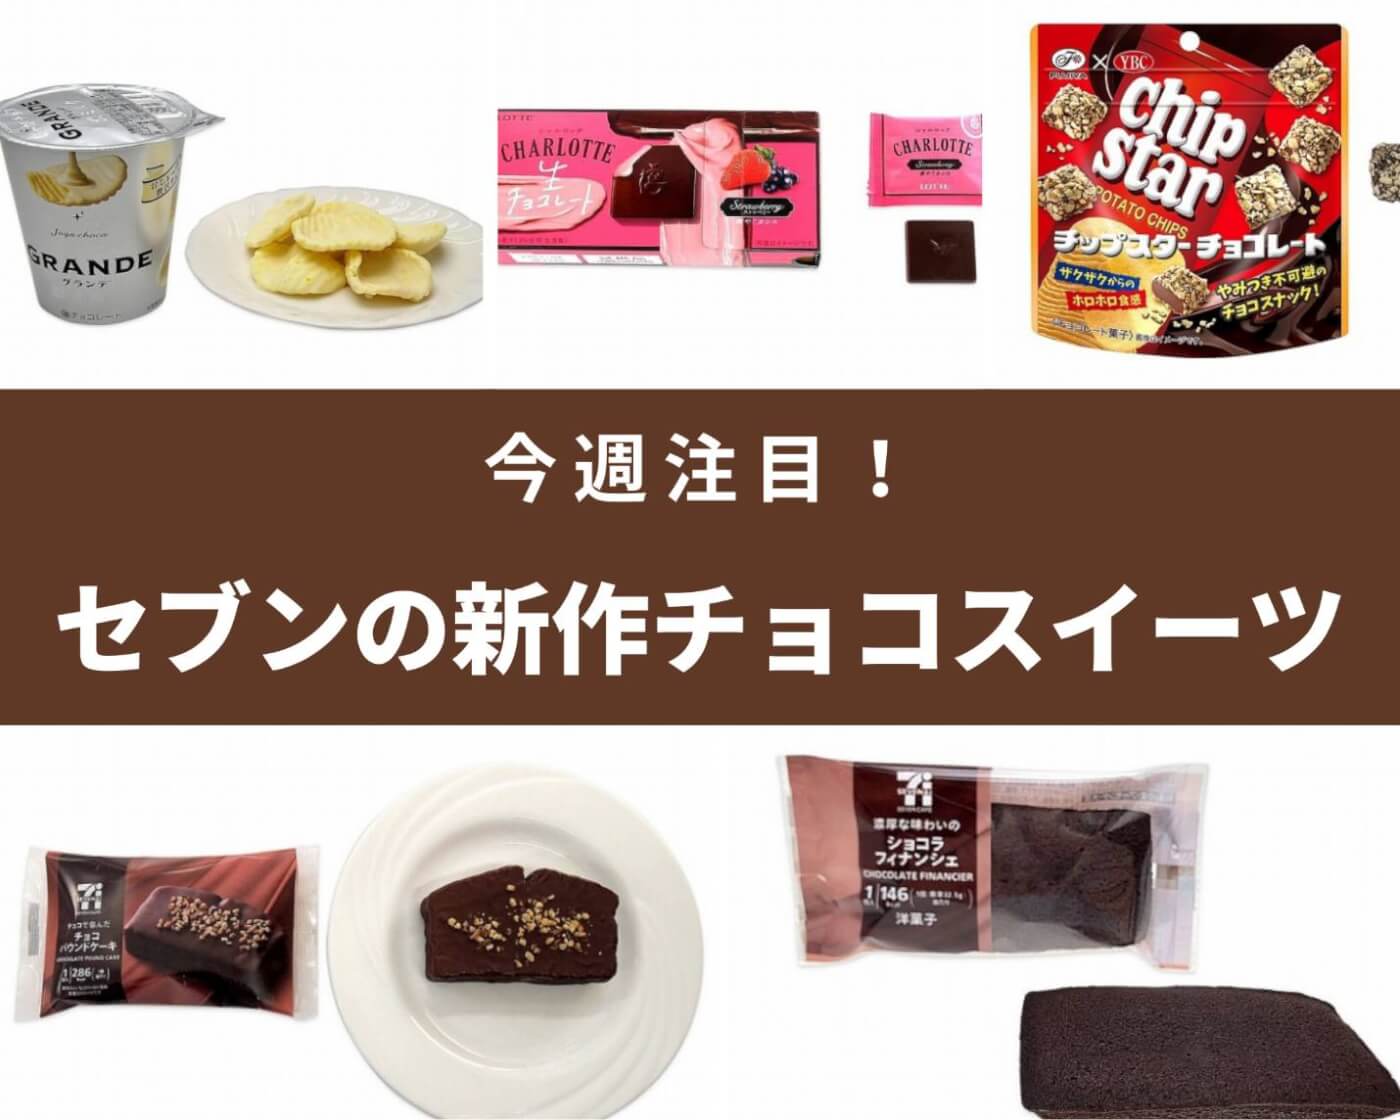 【セブン-イレブン】今週はチョコ系新商品が豊富♪チョコのお菓子＆スイーツ5選